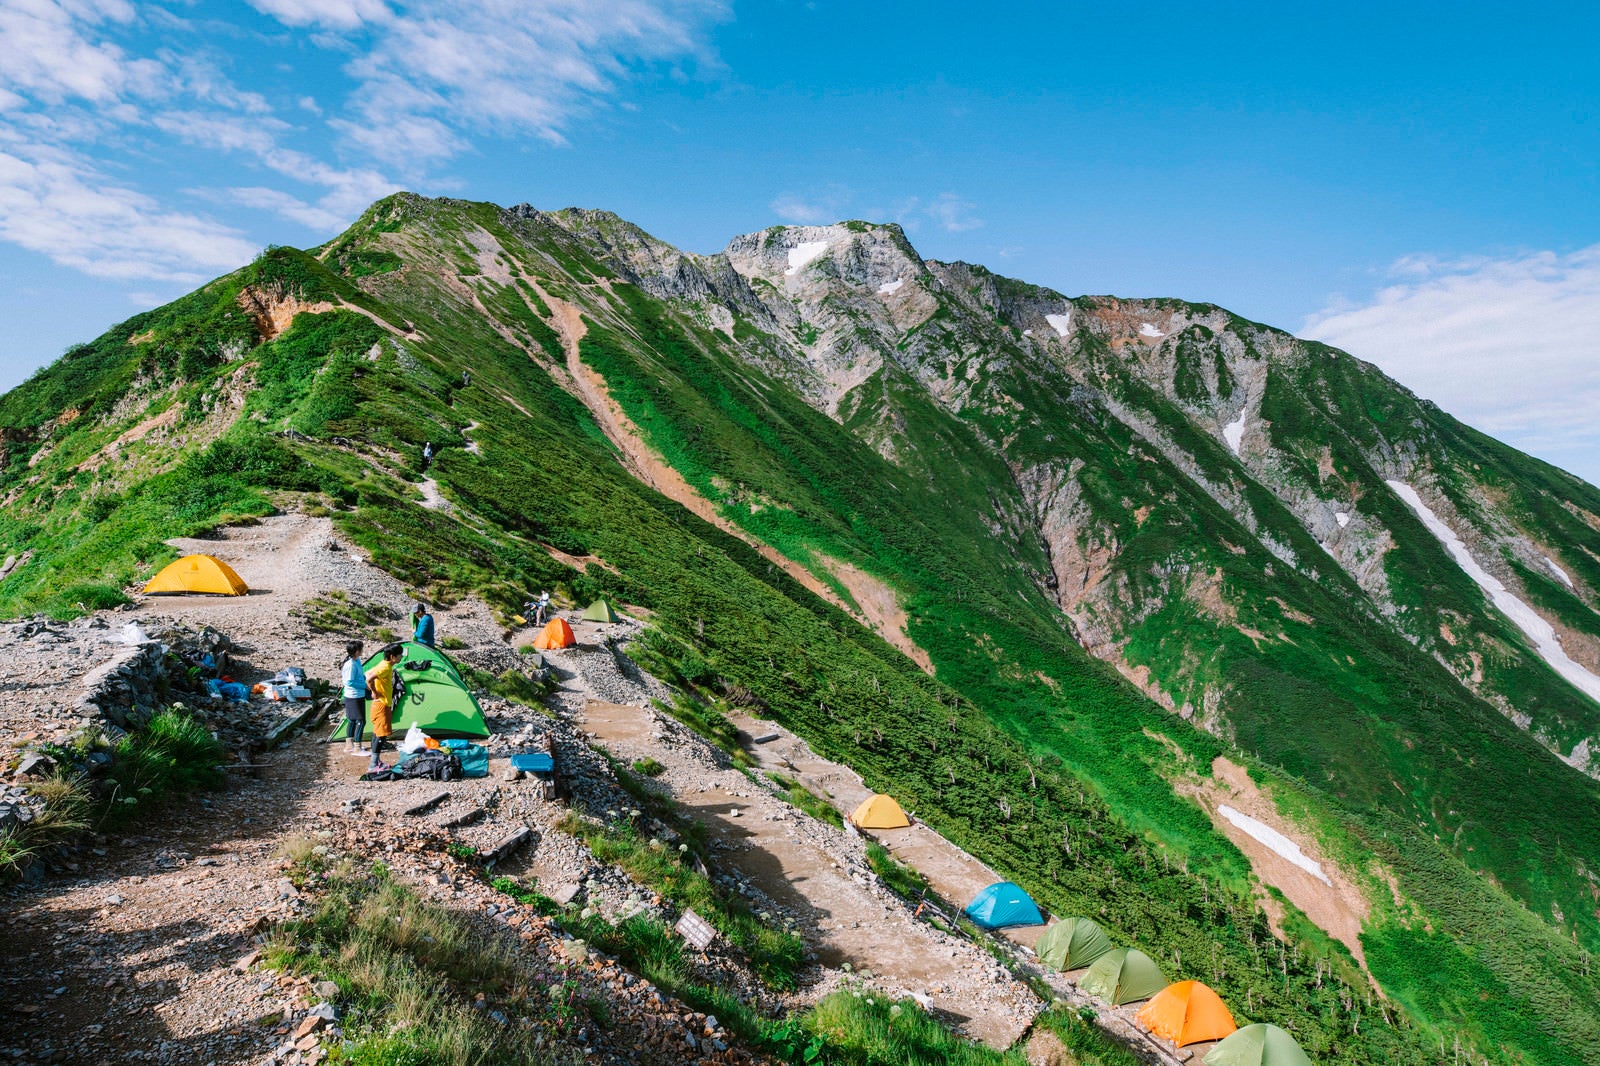 「五竜山荘にテントを張る人々と五竜岳」の写真